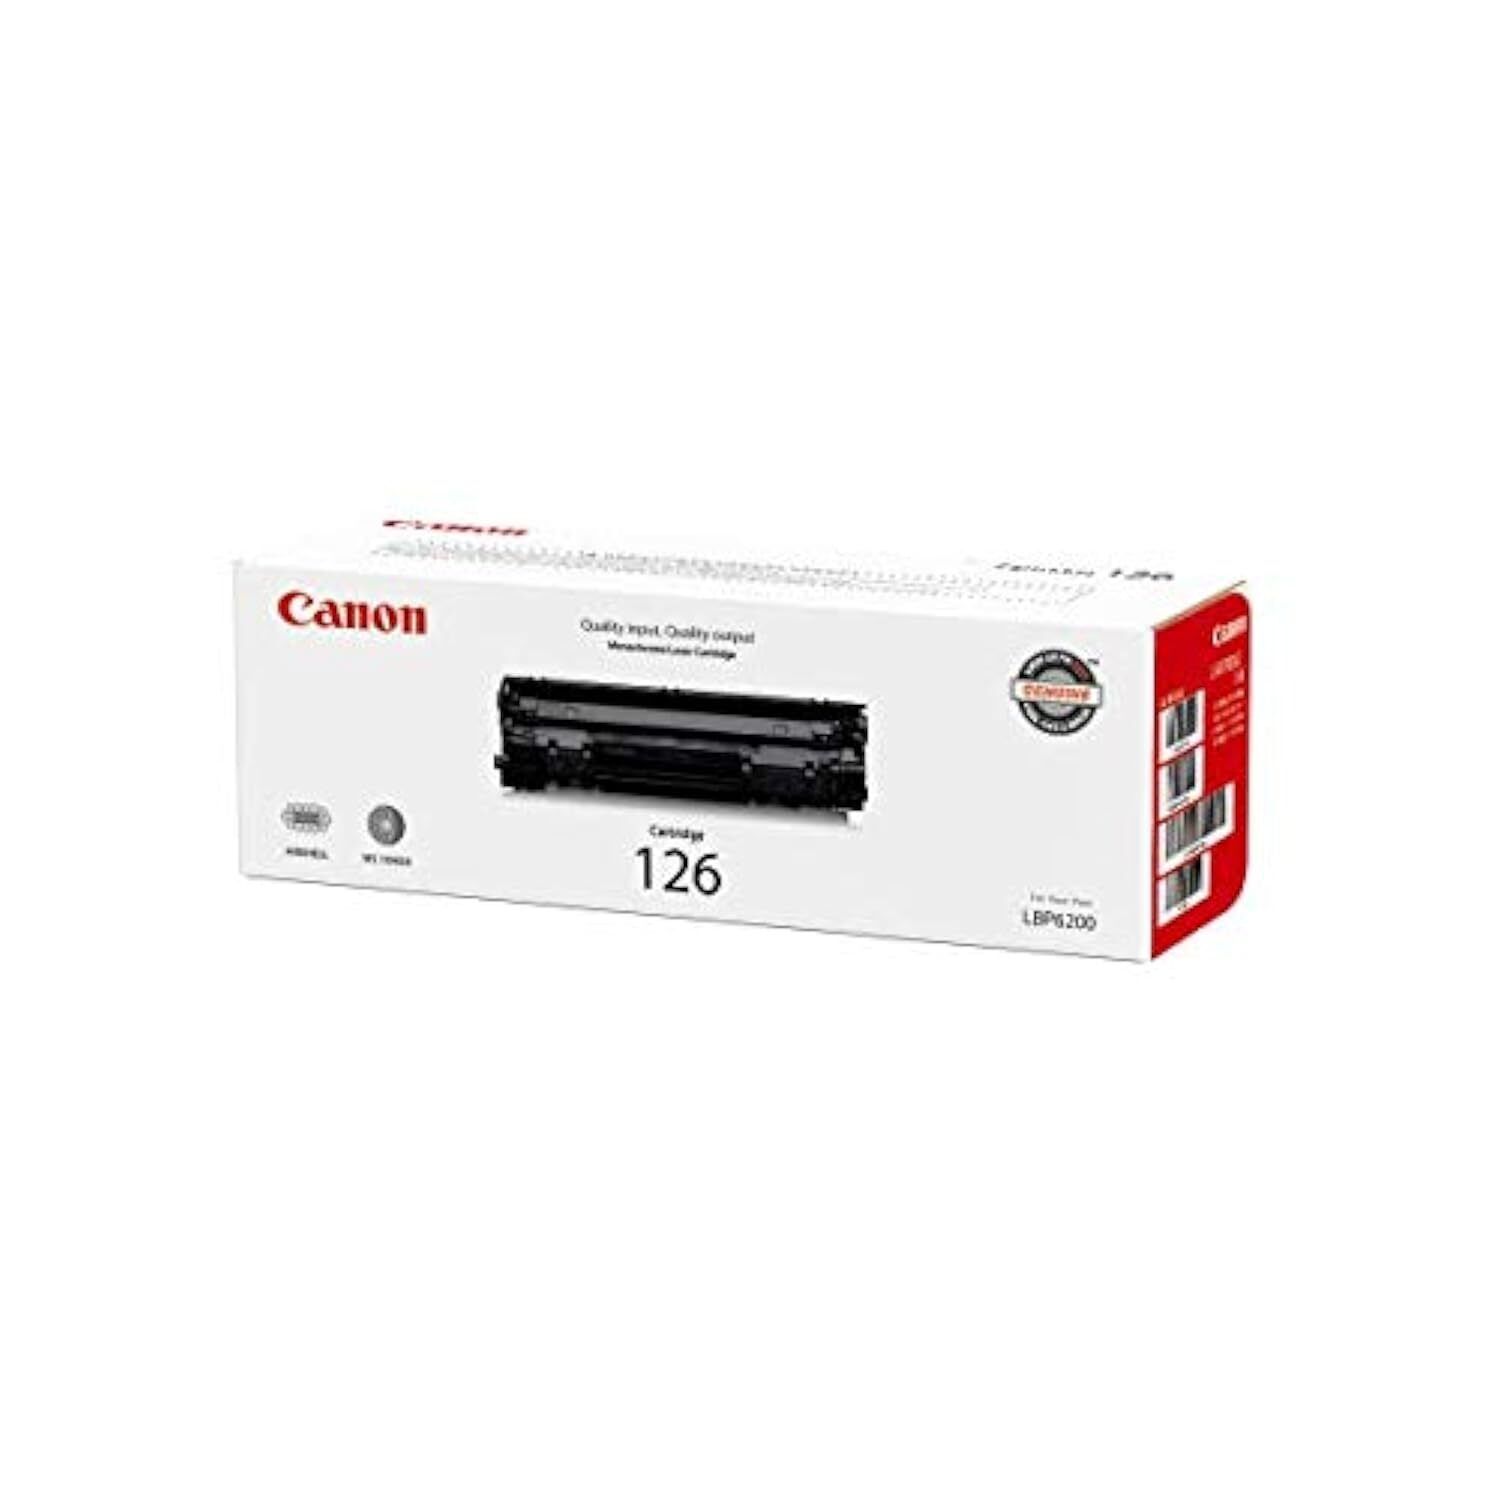 Canon Genuine Toner Cartridge 126 Black (3483B001), 1-Pack, for Canon imageCLA